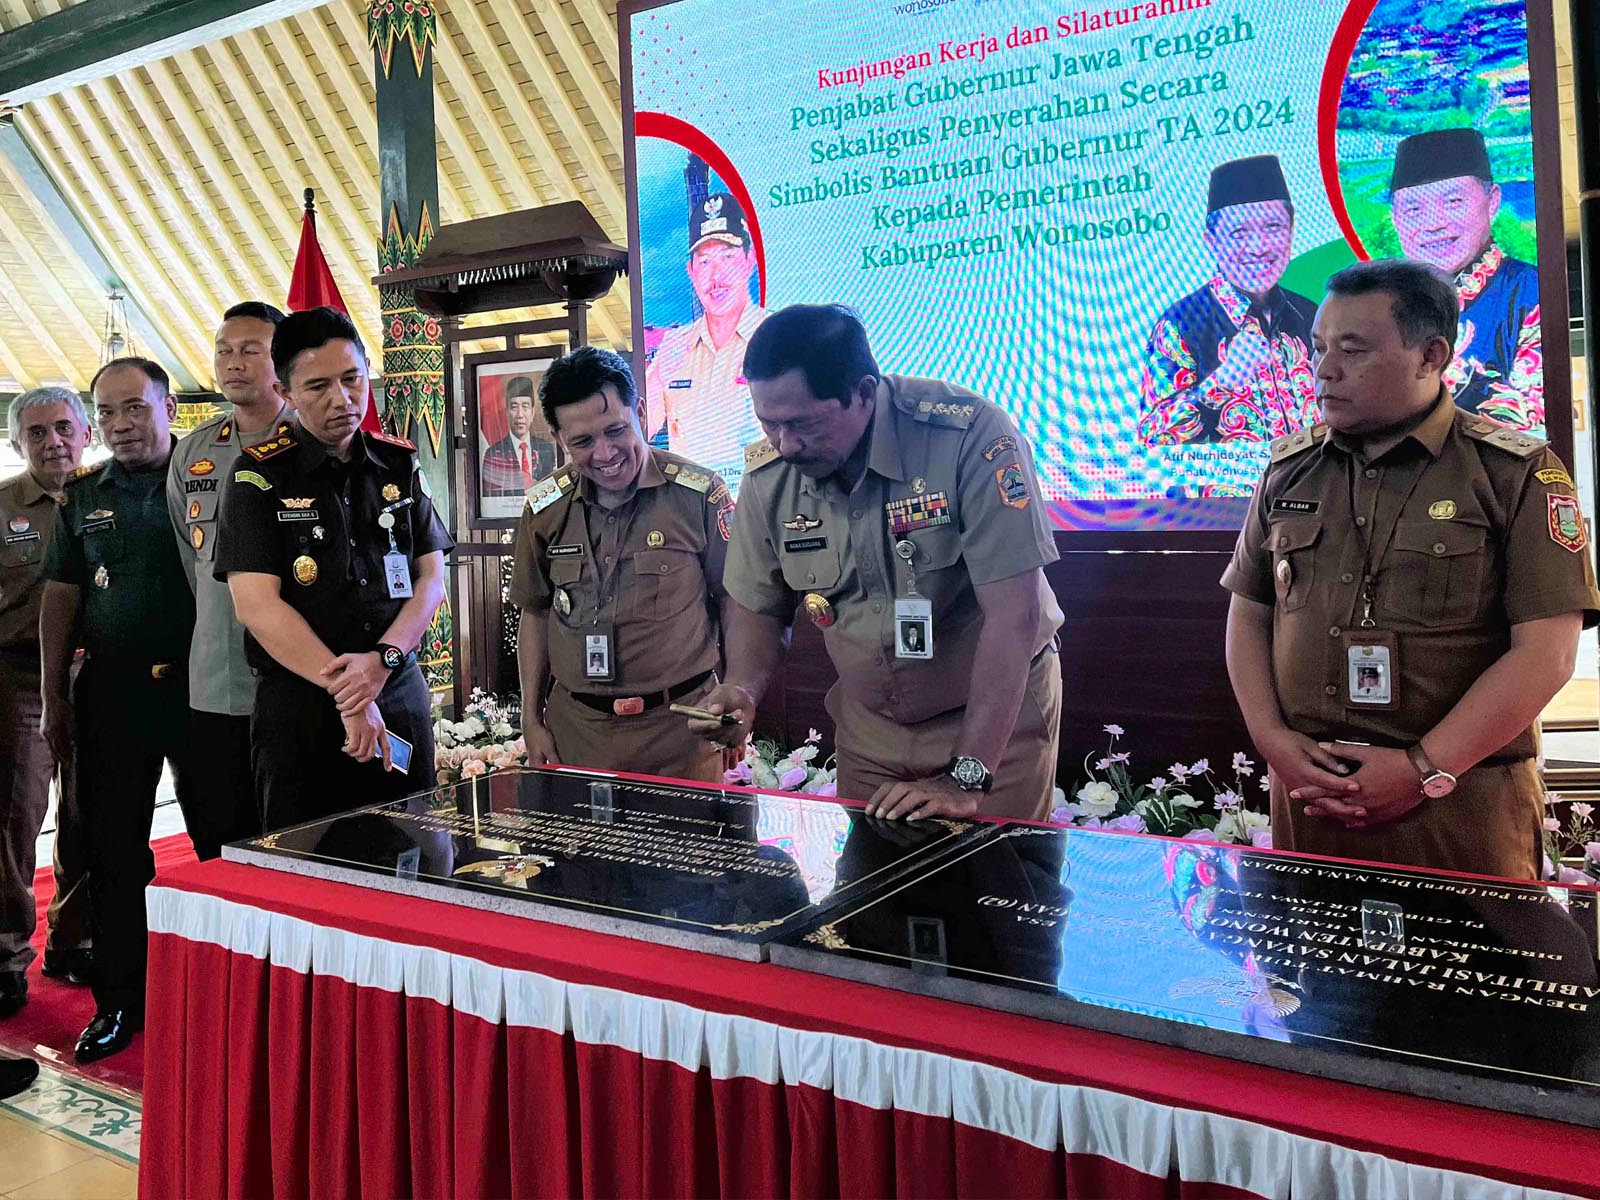 Pemerintah Provinsi Jawa Tengah tahun anggaran 2024 menyerahkan bantuan keuangan senilai Rp 160.765.824.500,- kepada Pemerintah Kabupaten Wonosobo